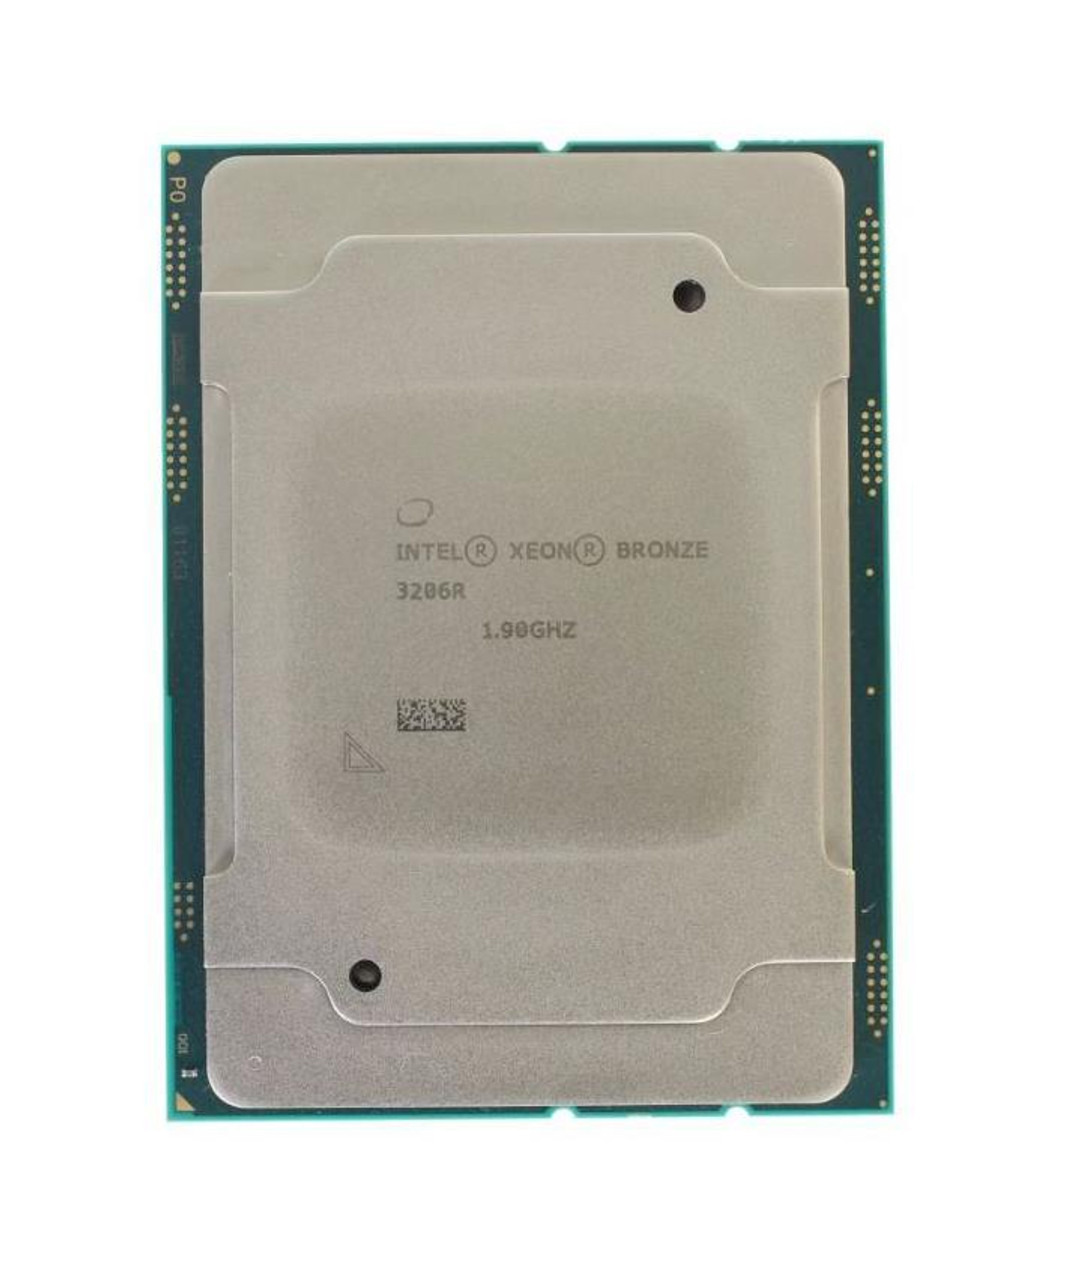 Dell CPU Kit Intel Xeon Bronze 8 Core Processor 3206r 1.90GHz 11mb Cache Tdp 85w Fclga3647 For Dell Precision 7920 Tower